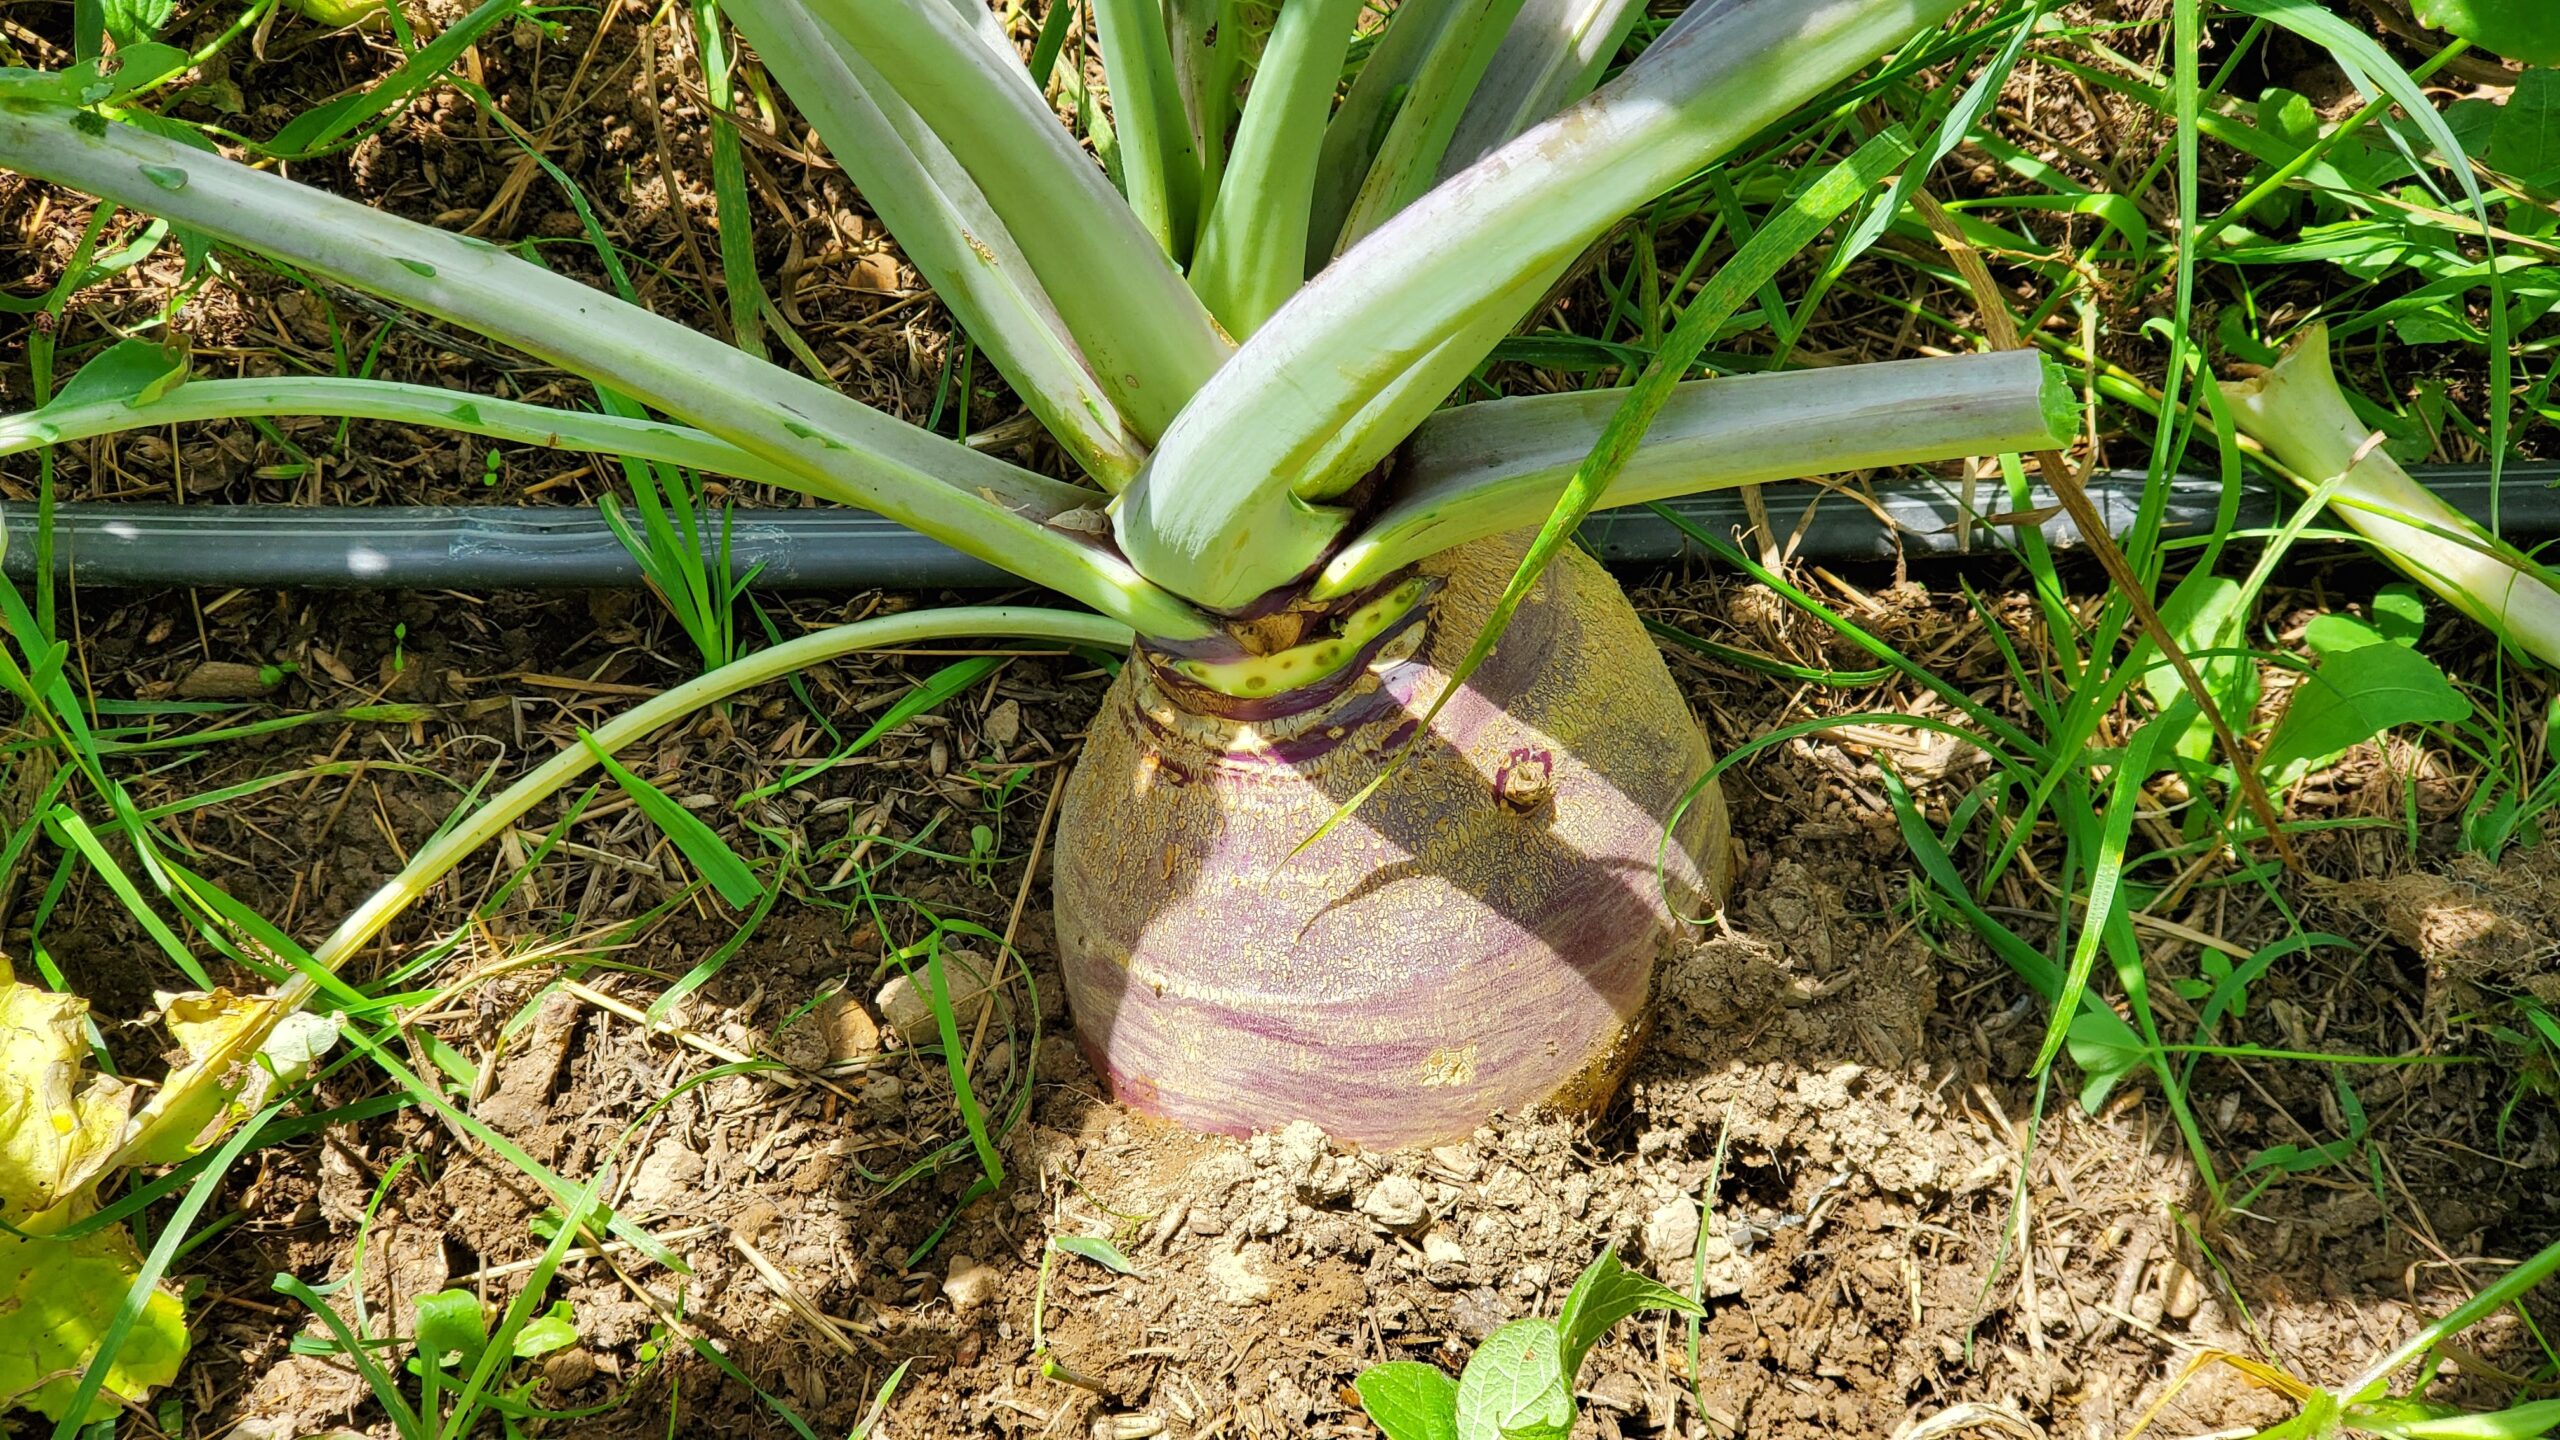 Heirloom Rutabaga growing in the ground.